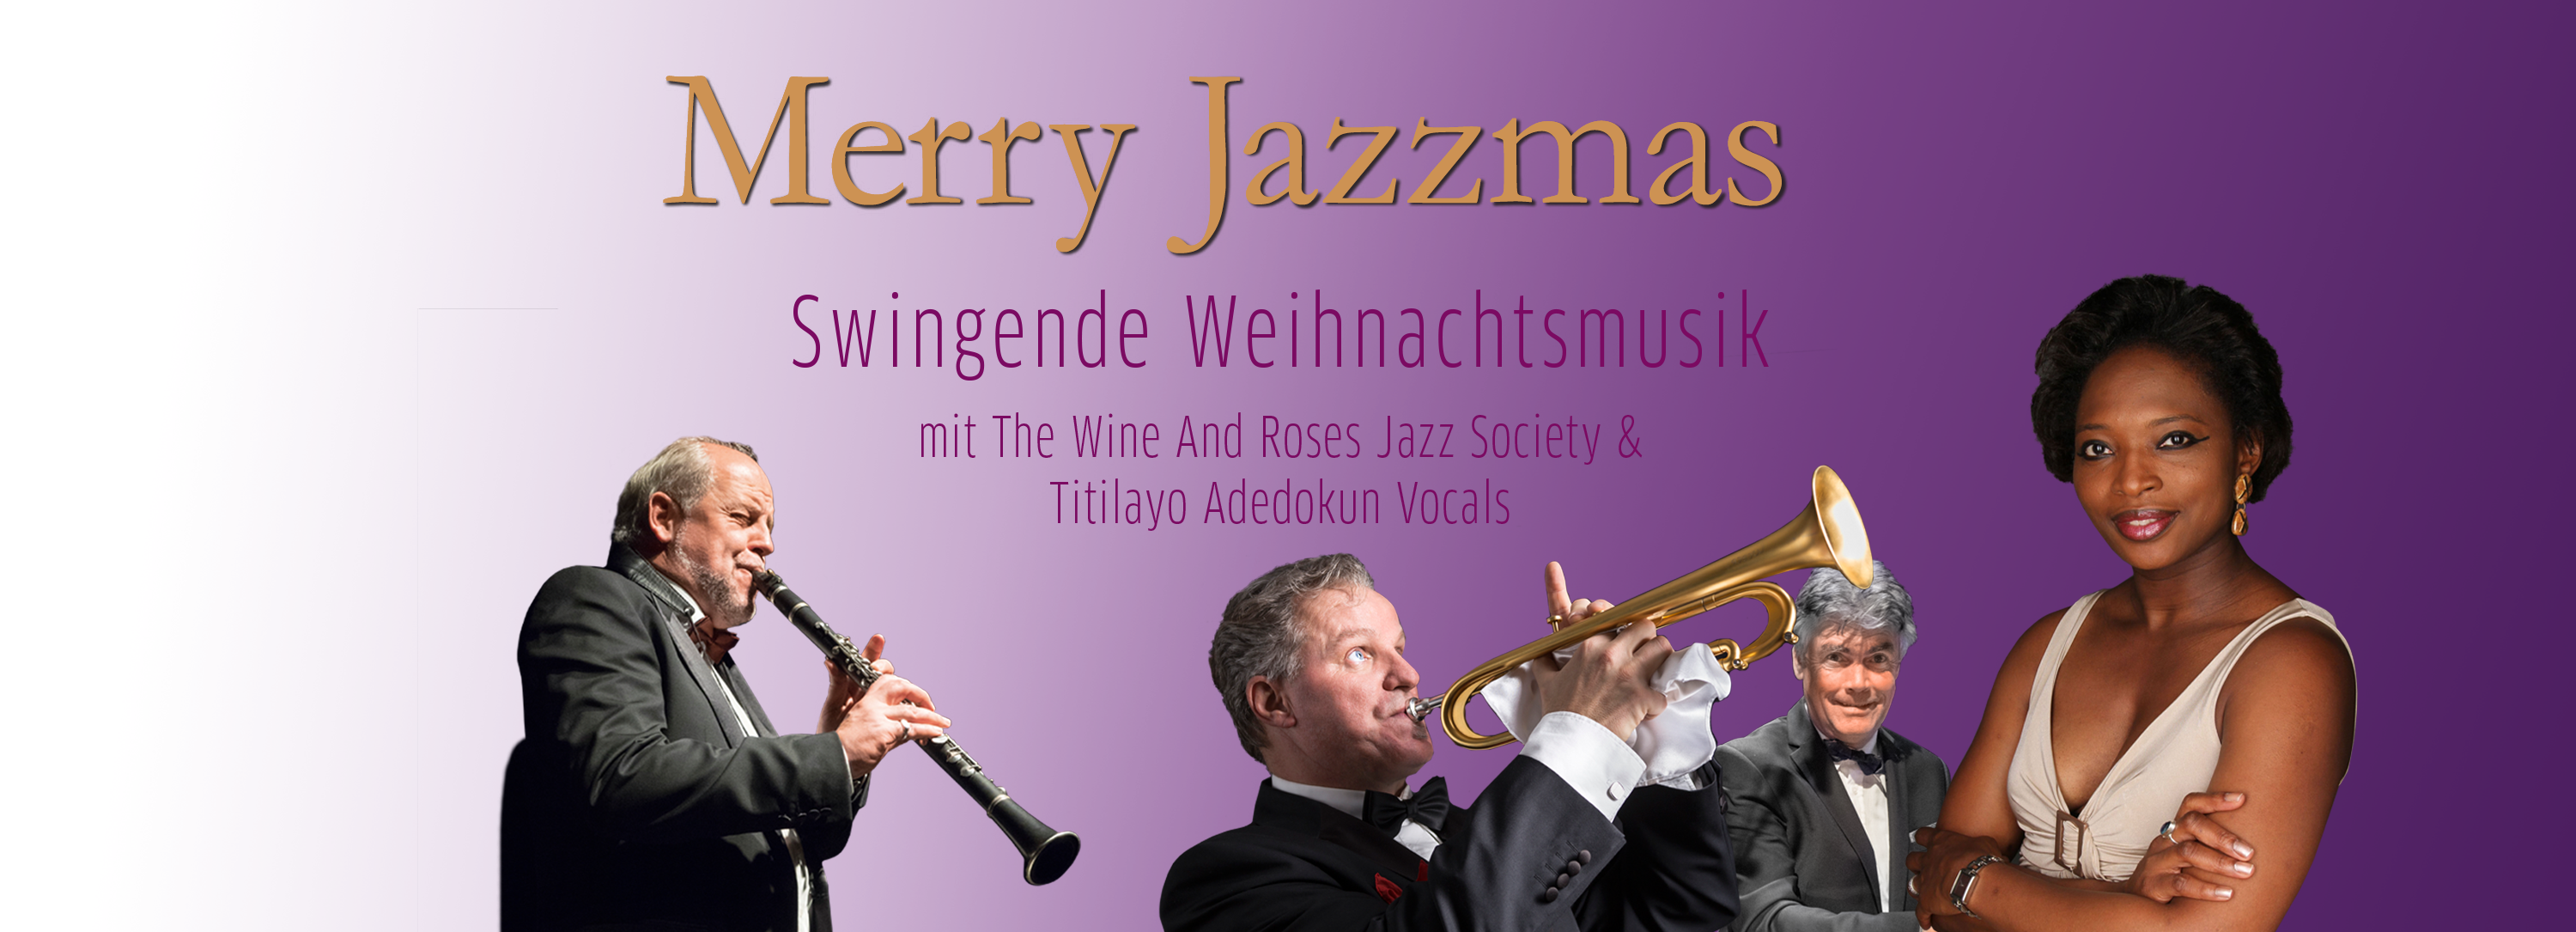 Merry Jazzmas im Deutschen Theater München